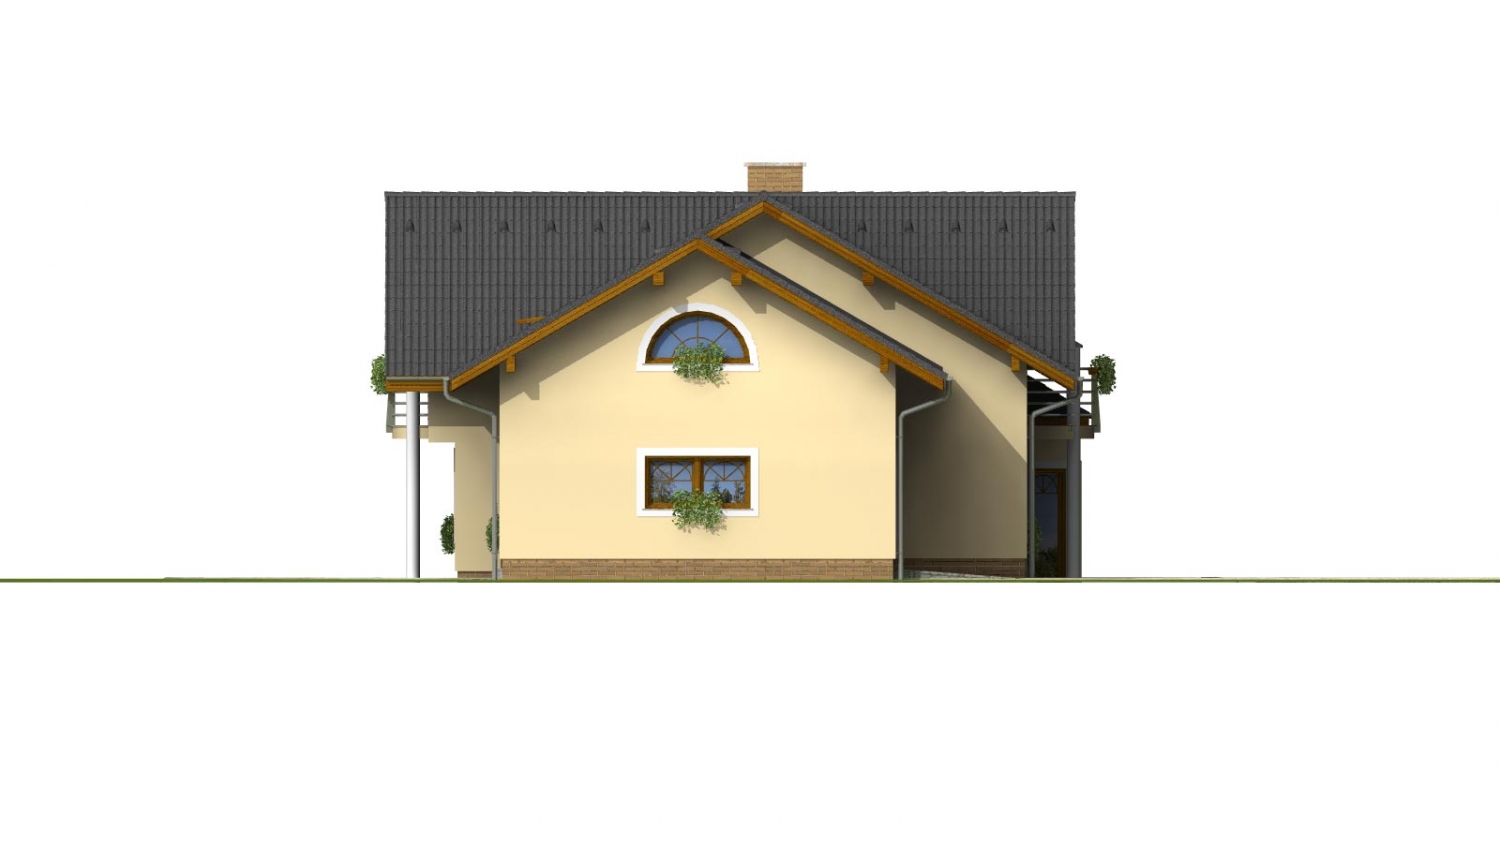 Zrkadlový pohľad 2. - Velký podsklepený rodinný dům s dvojgaráží a sedlovou střechou. Možnost dvougeneračního bydlení.